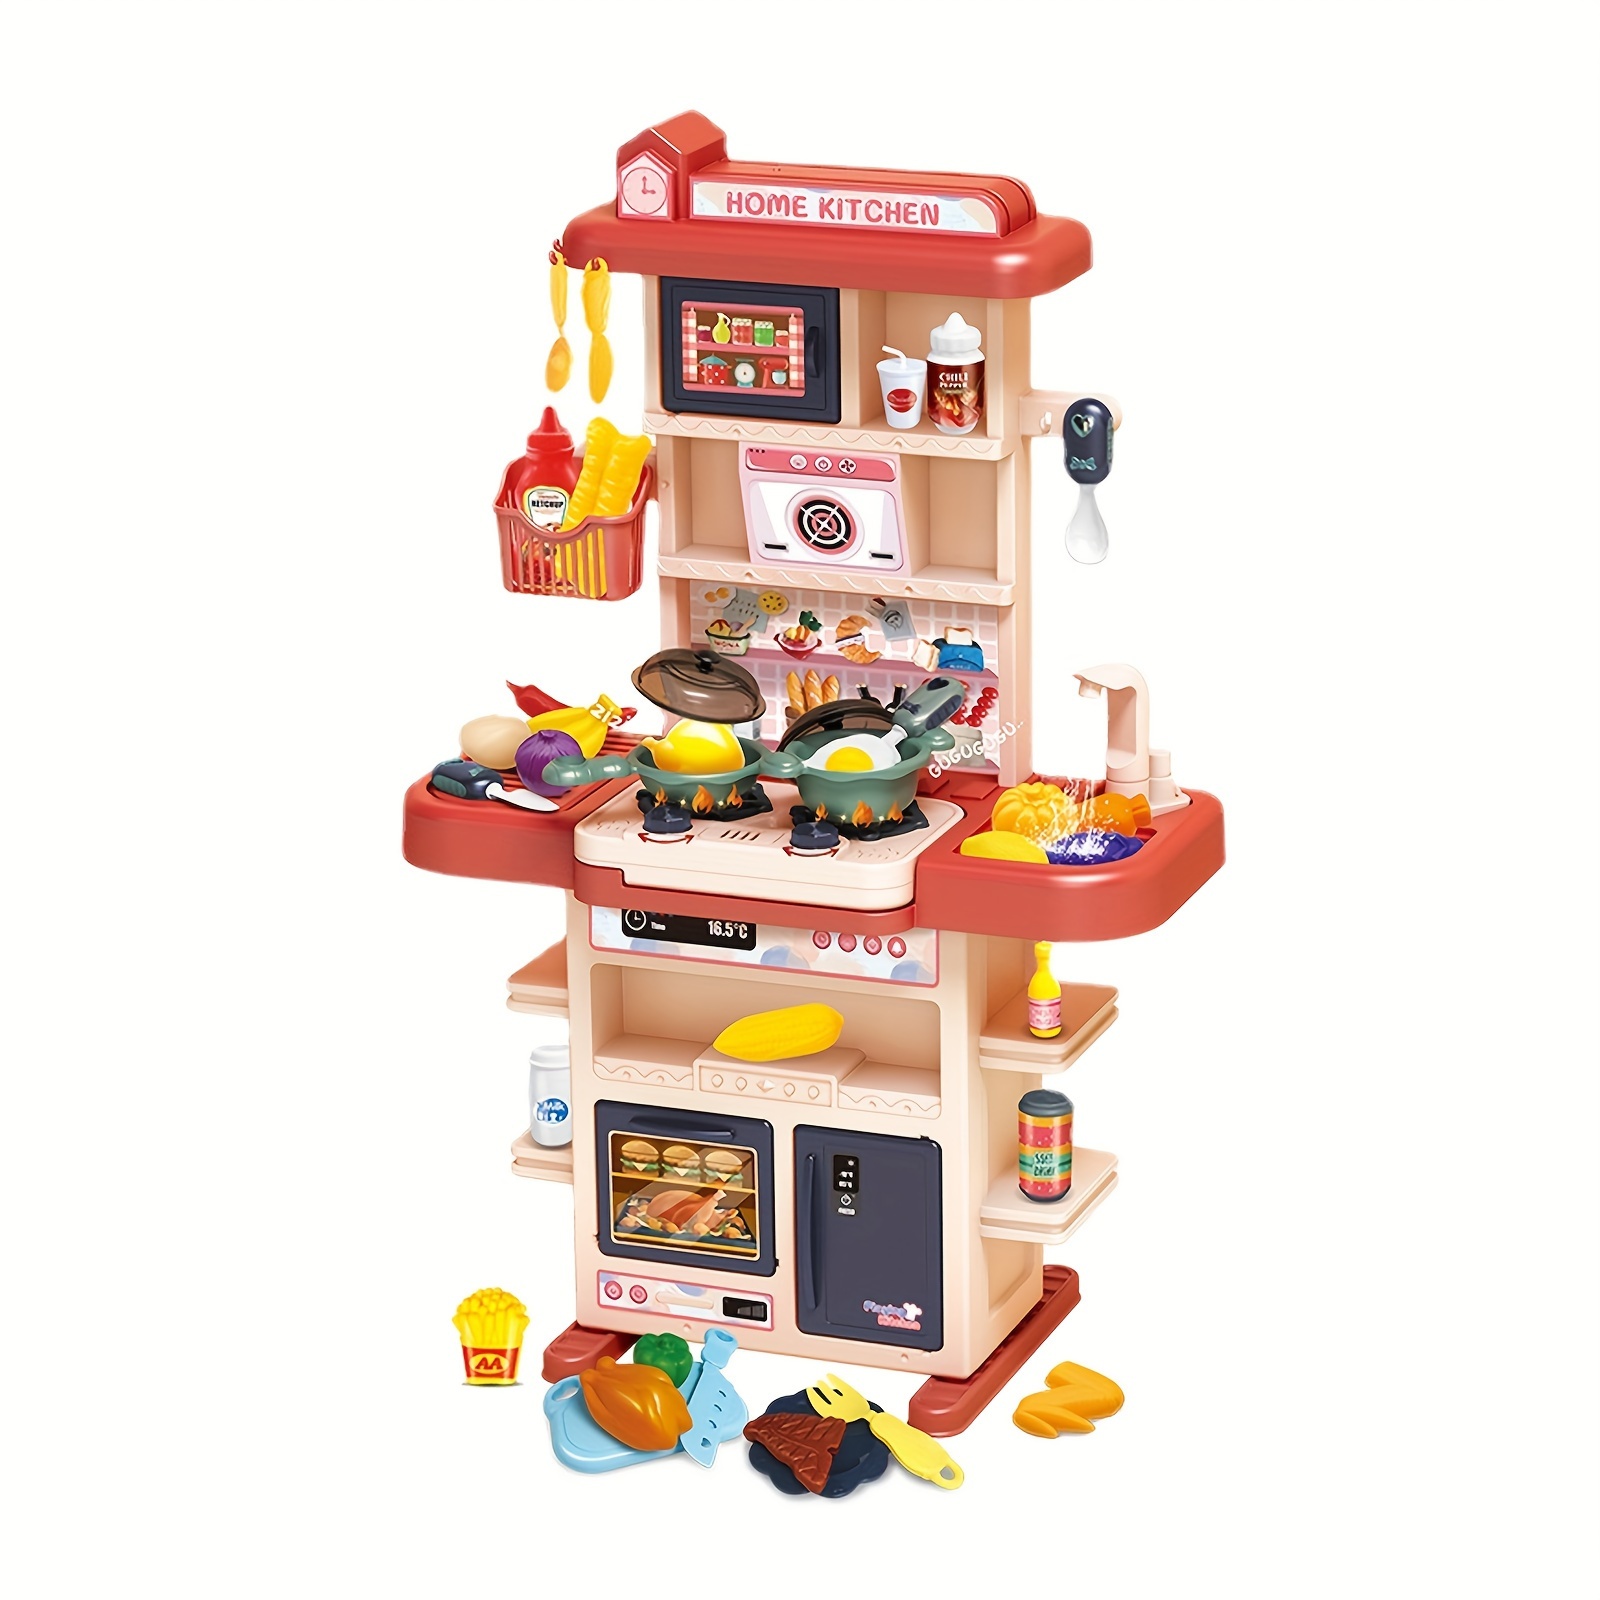 Play-Kitchen-for-Kids con 18 piezas de comida de juguete y cafetera para  niños, juguetes de cocina de madera, 17 piezas de cafetera de juguete